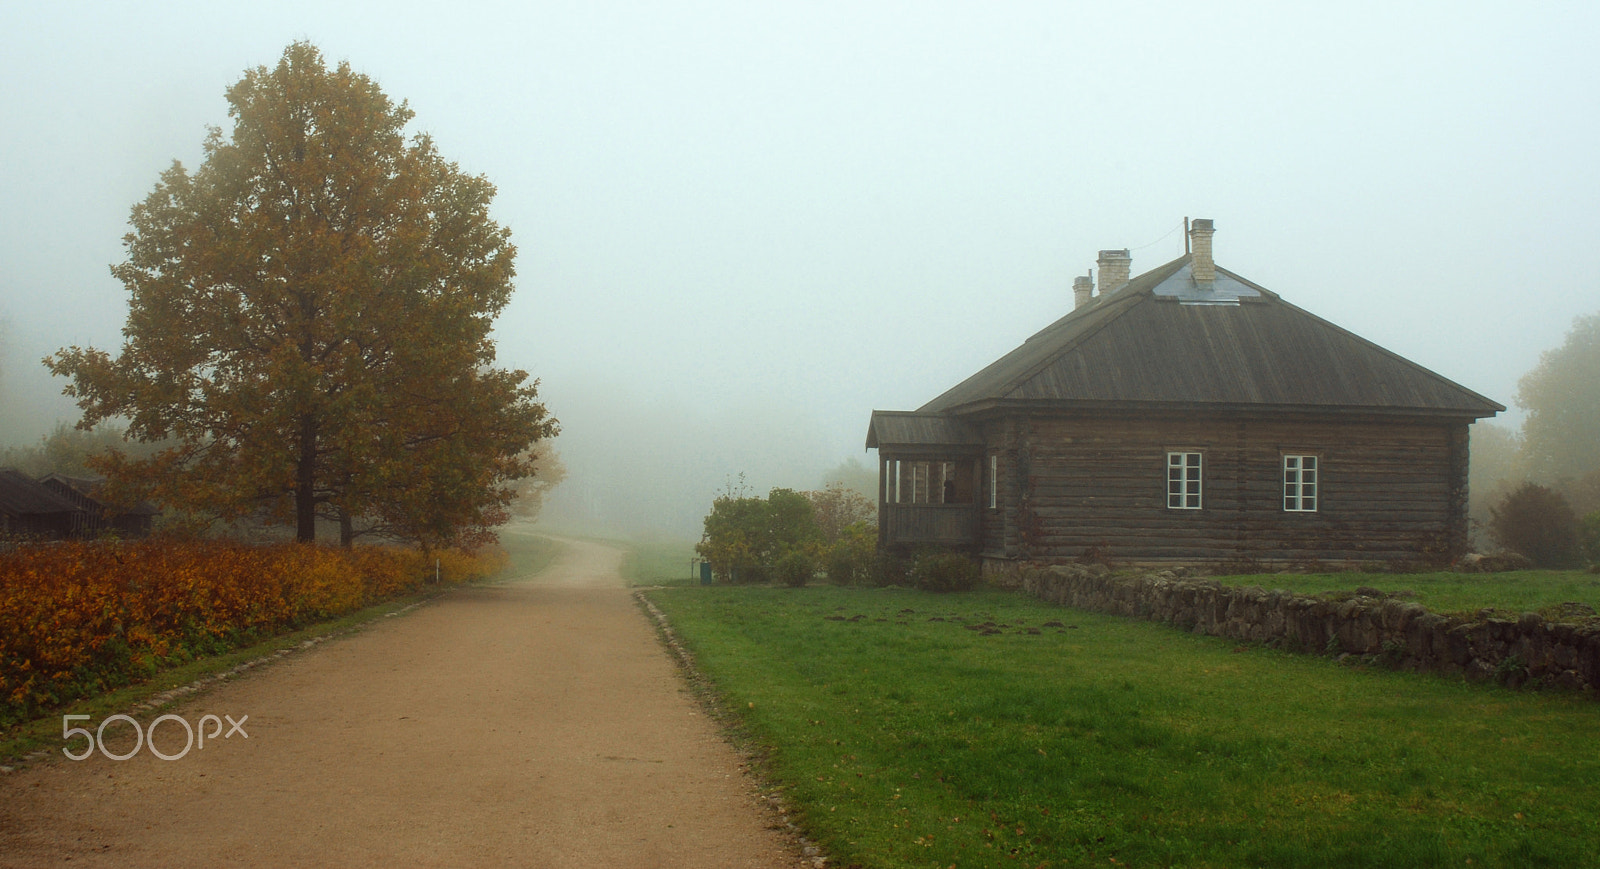 Nikon D80 + AF Zoom-Nikkor 28-105mm f/3.5-4.5D IF sample photo. Autumn fog photography